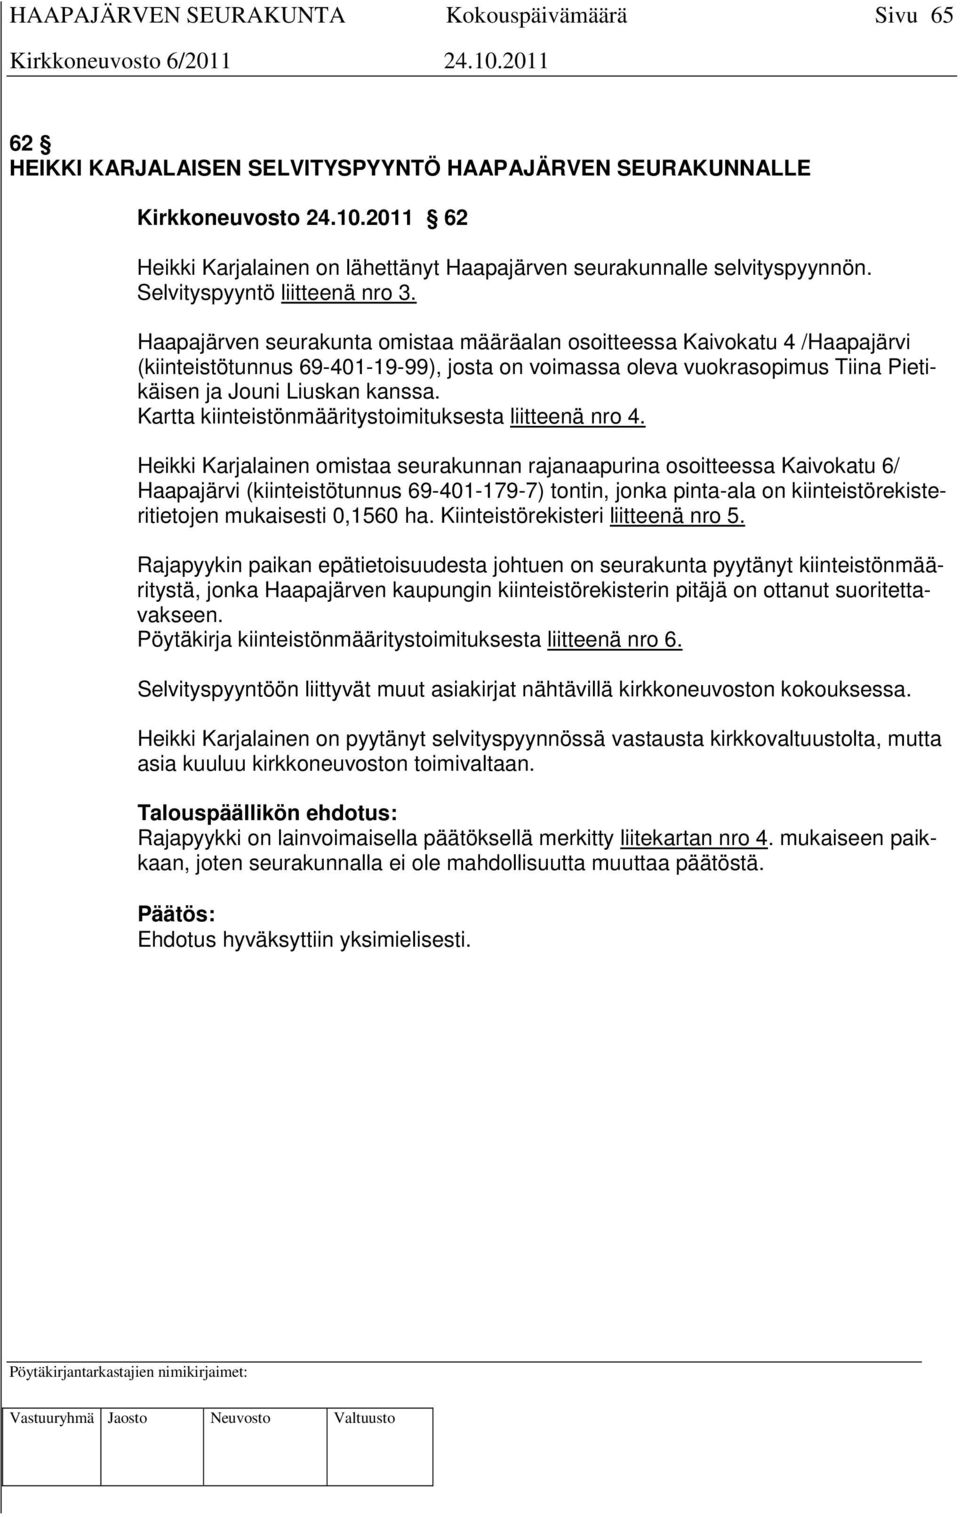 Haapajärven seurakunta omistaa määräalan osoitteessa Kaivokatu 4 /Haapajärvi (kiinteistötunnus 69-401-19-99), josta on voimassa oleva vuokrasopimus Tiina Pietikäisen ja Jouni Liuskan kanssa.